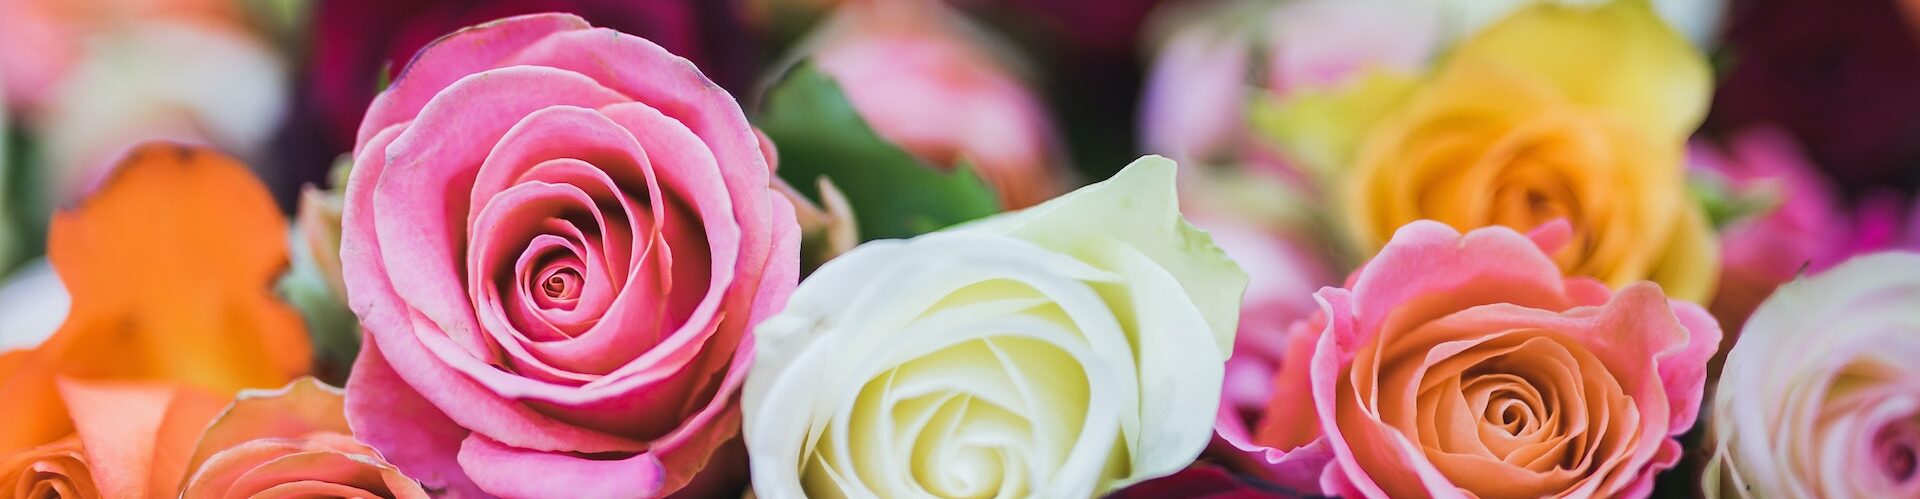 Dostawa kwiatów kolorowych róż